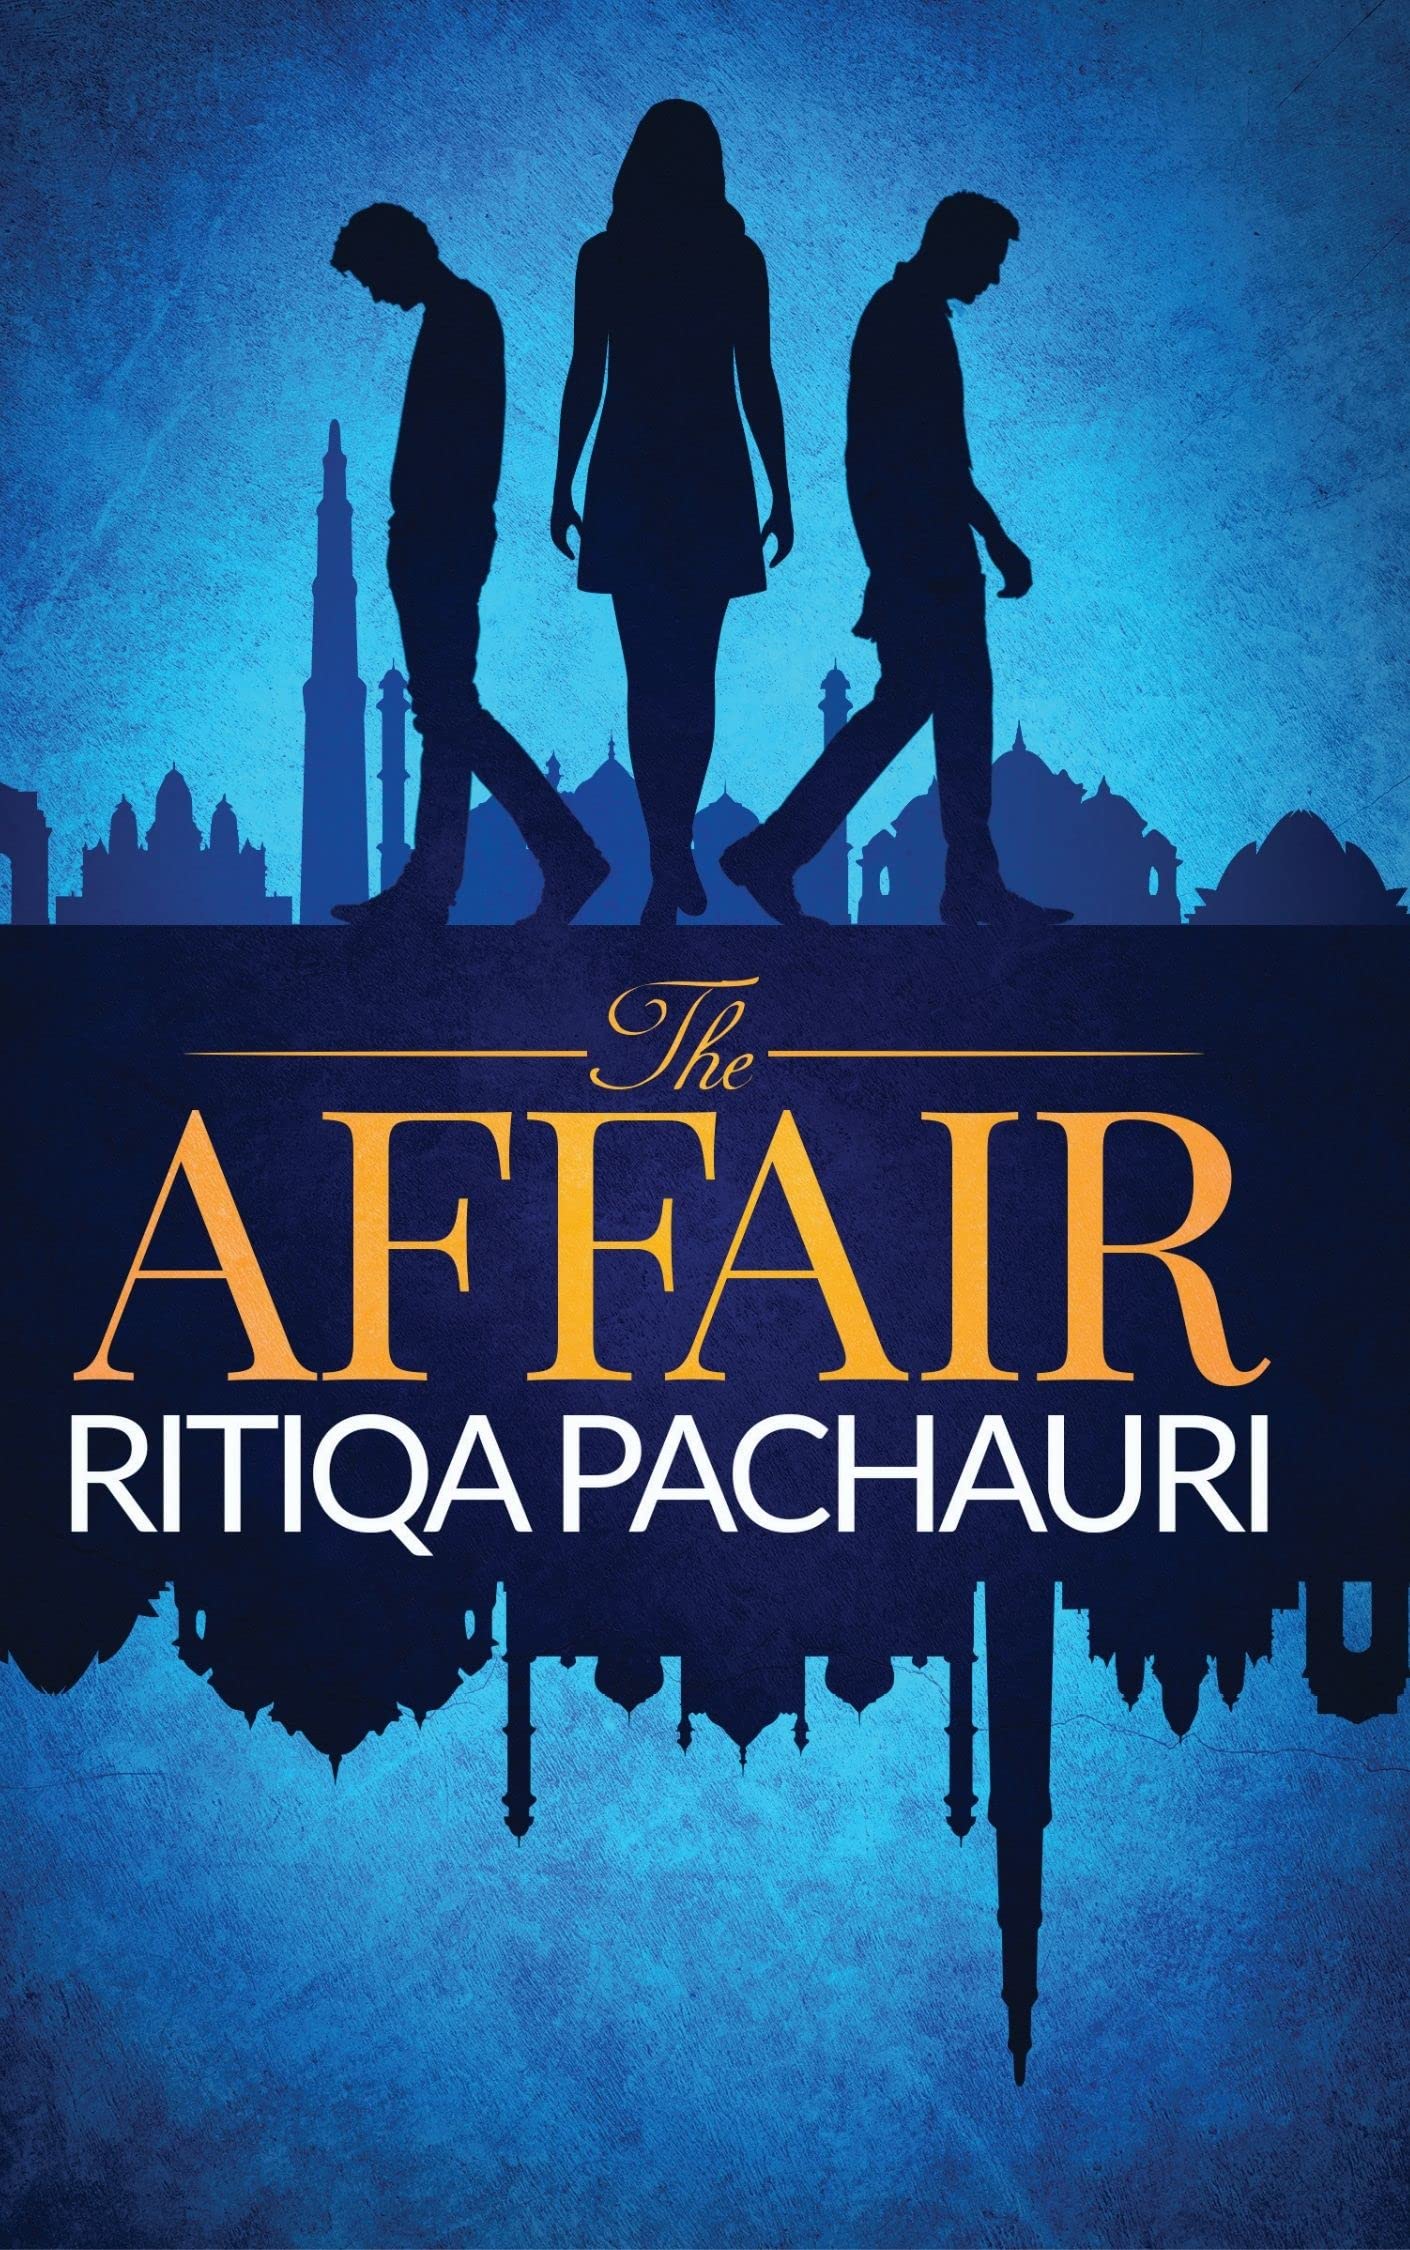 Ritiqa's book: the affair